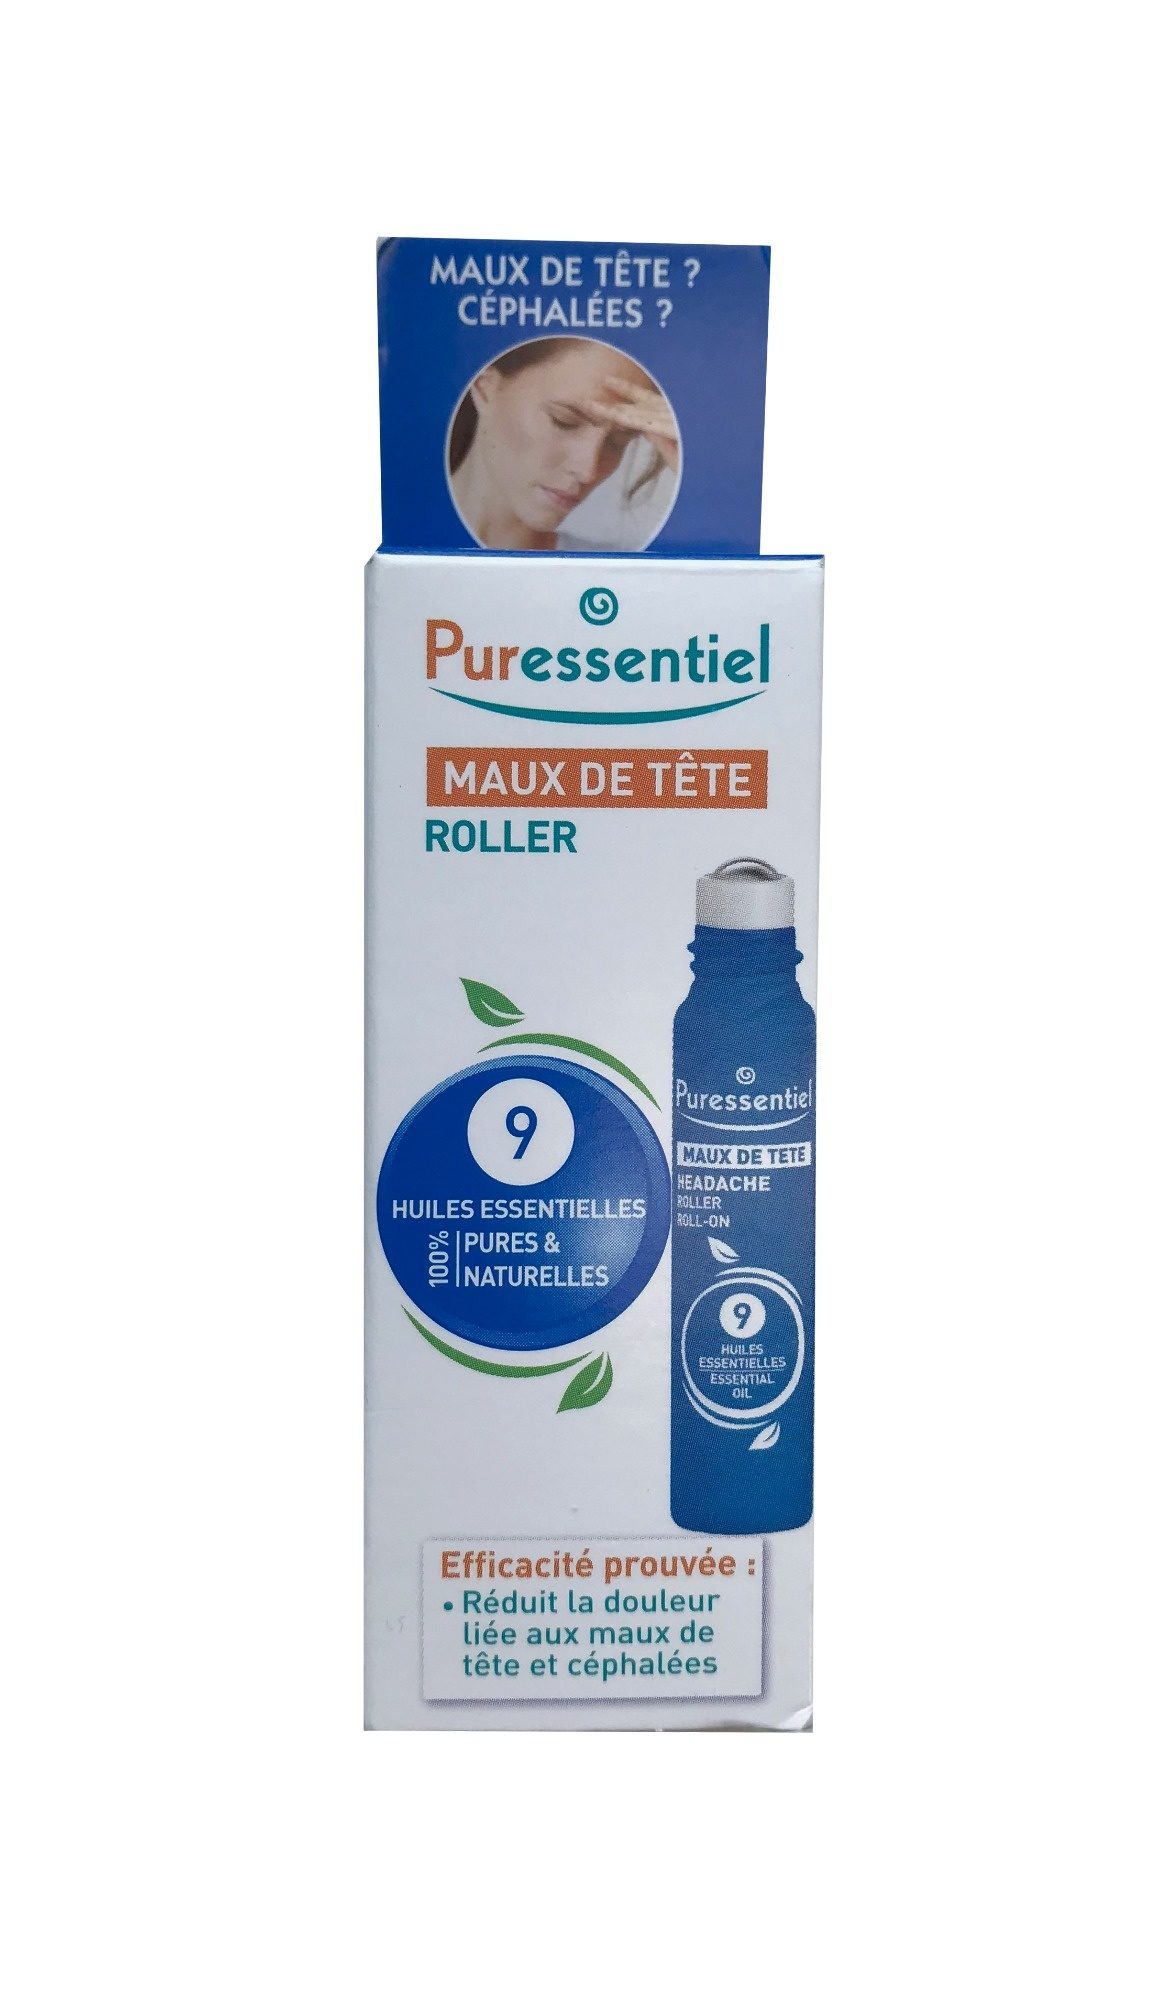 Puressentiel Maux de tête Roller 9 huiles essentielles - 製品 - fr